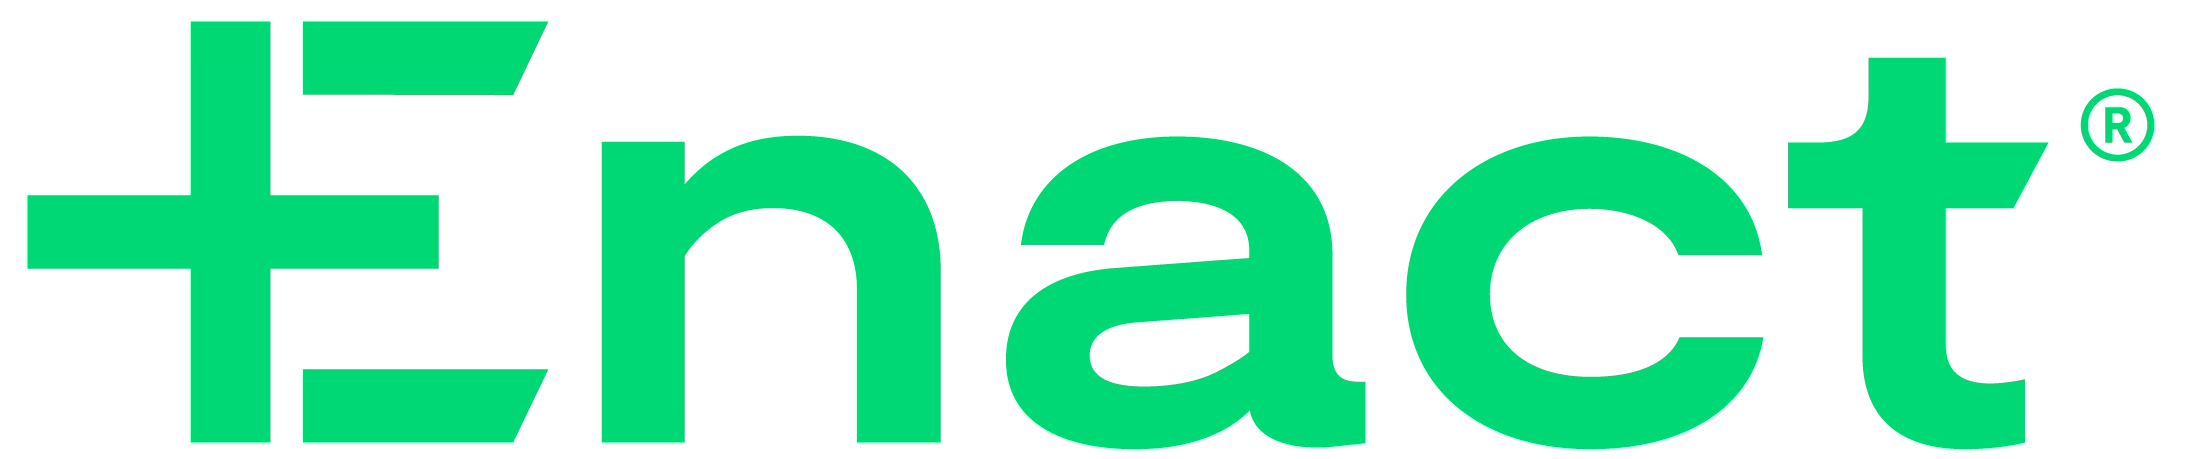 Enact Logo.jpg